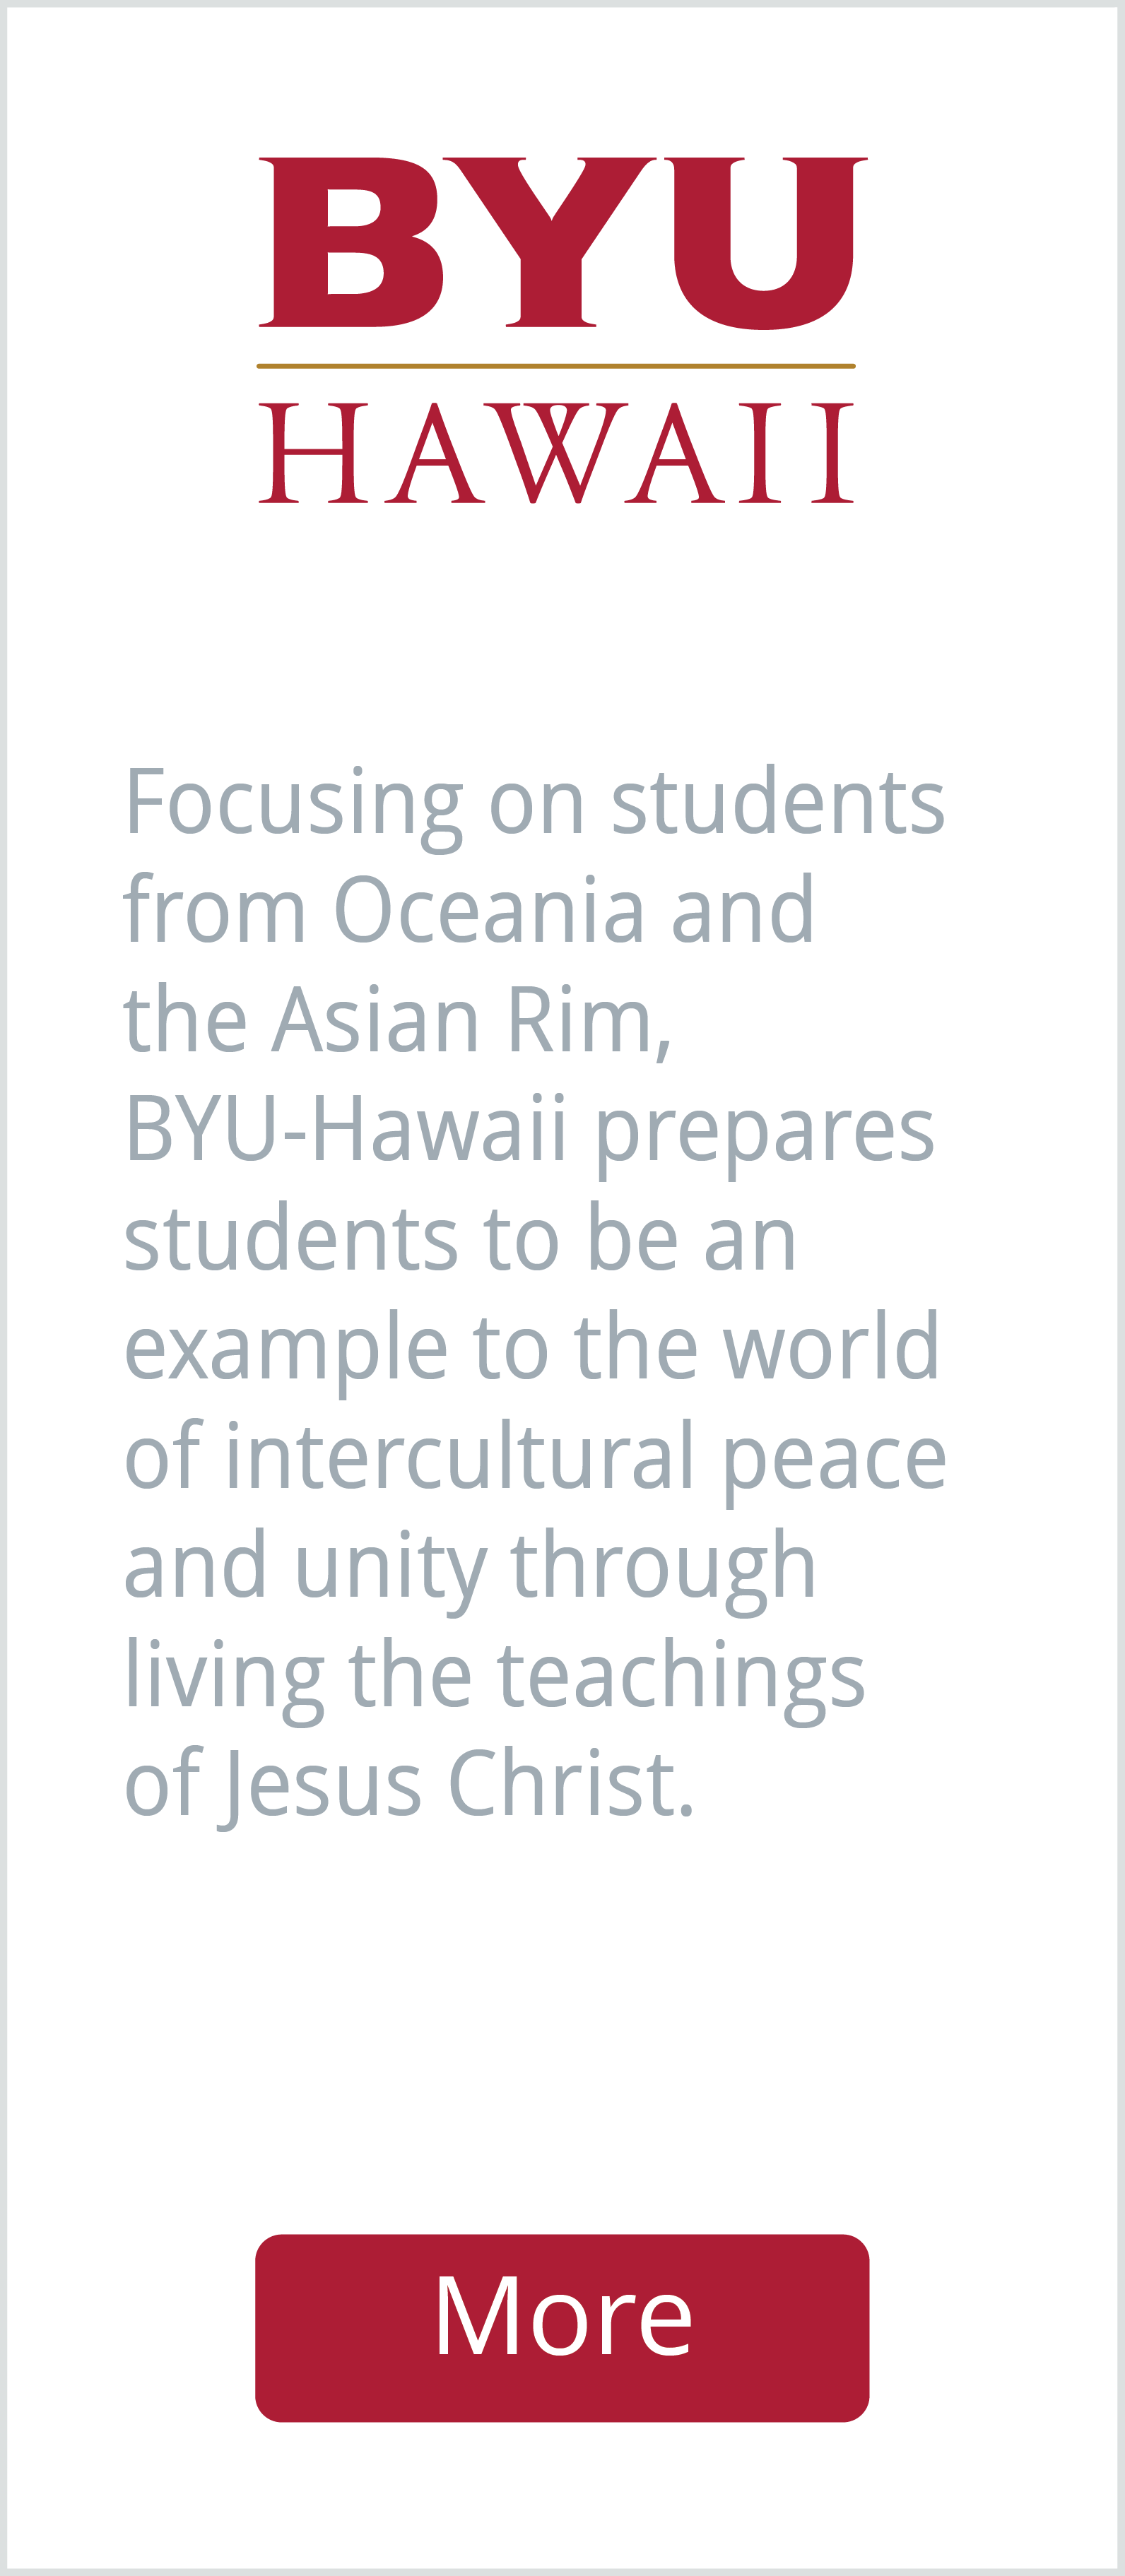 BYU Hawaii logo